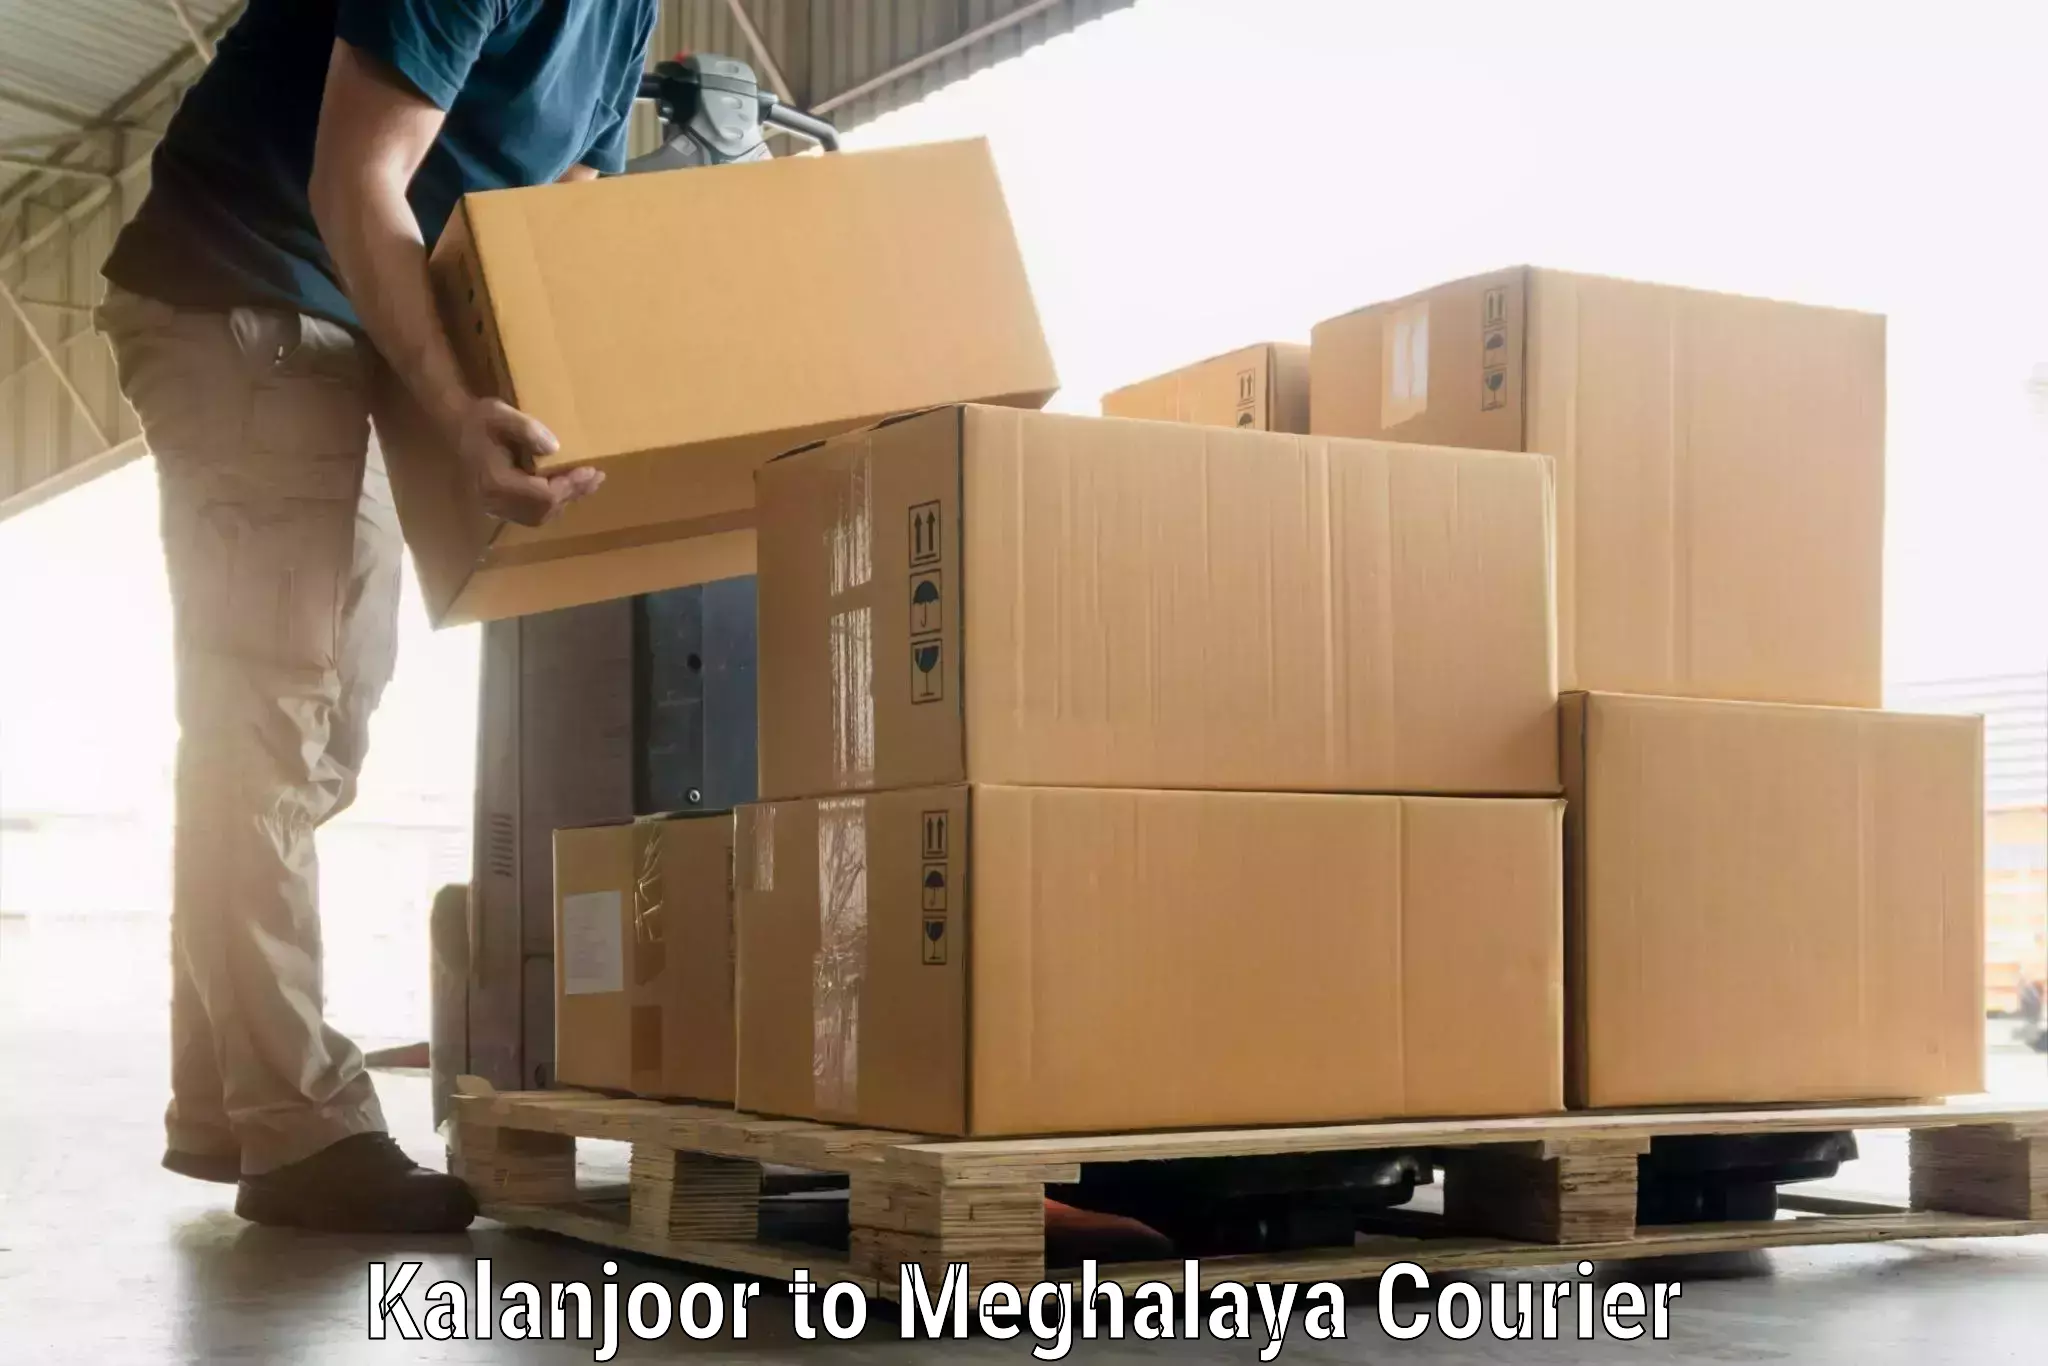 Luggage shipment specialists Kalanjoor to Meghalaya